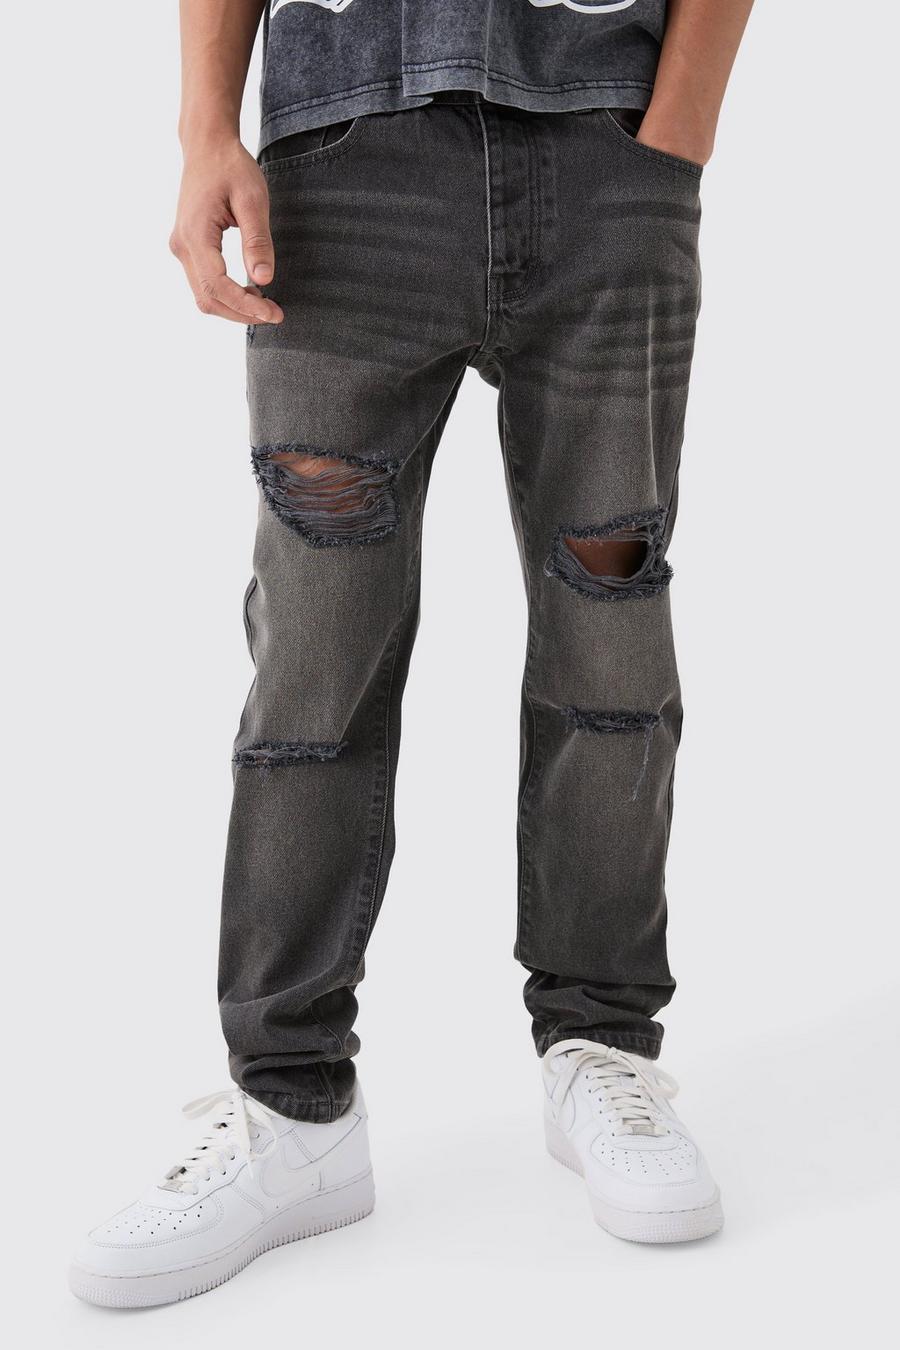 Jeans Slim Fit in denim rigido color antracite con strappi all over, Charcoal